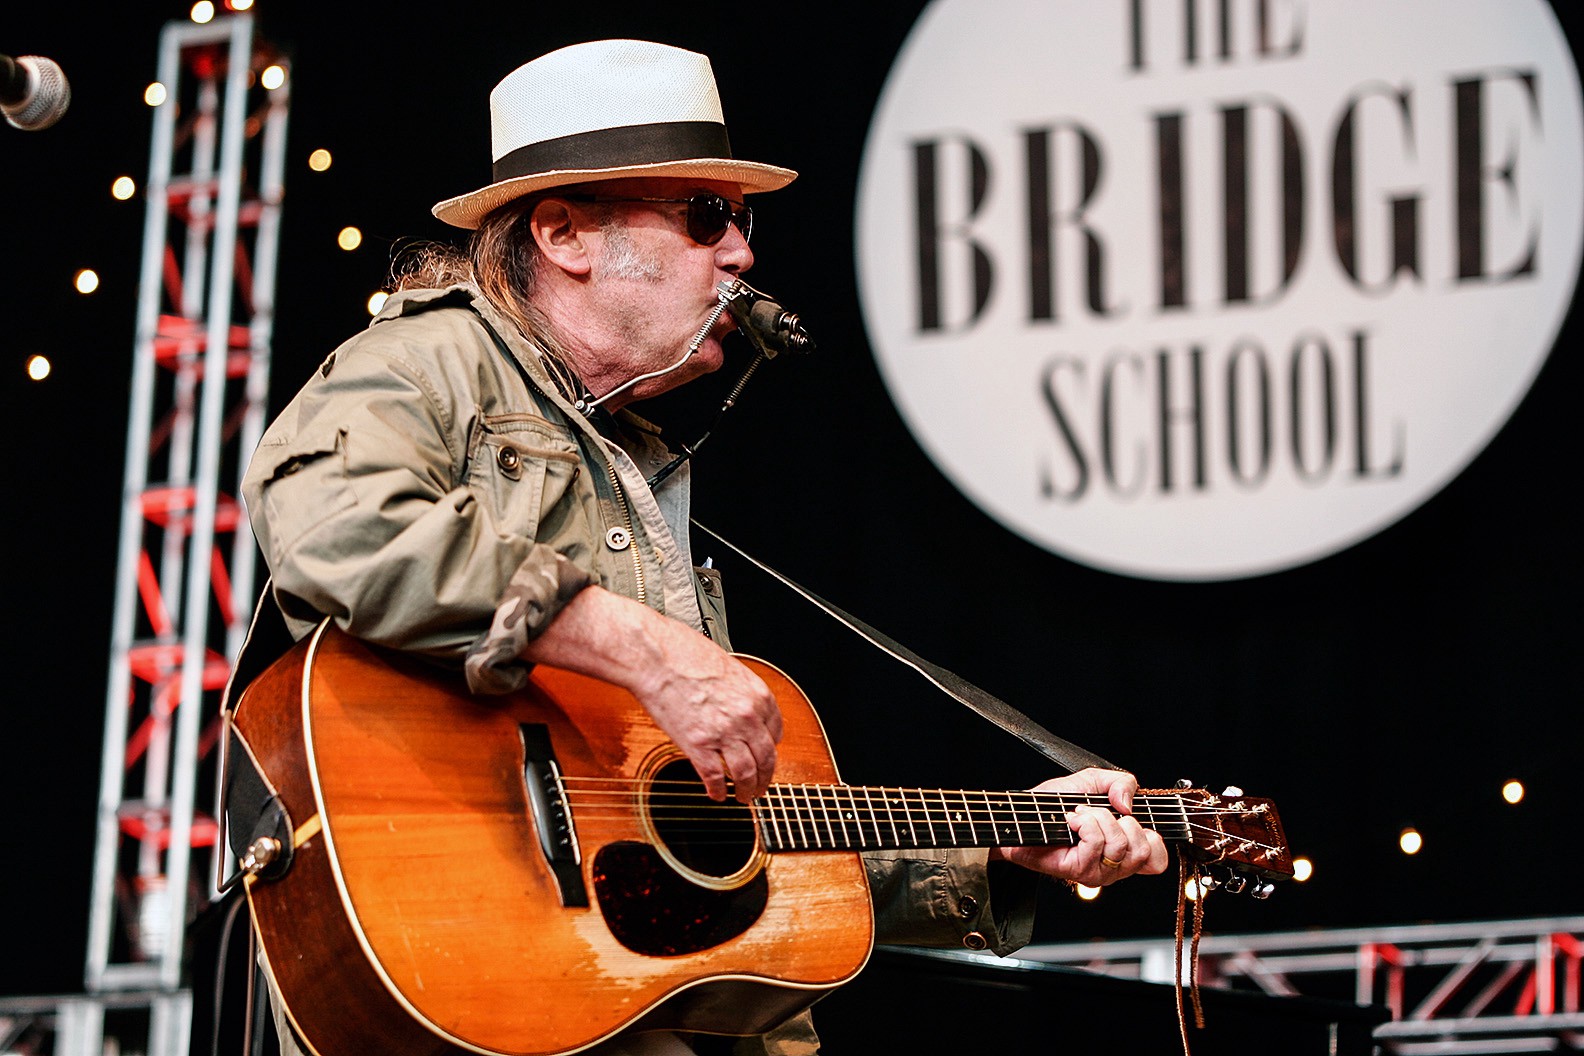 Bridge School Festival: el evento con que Neil Young ha ayudado a los niños discapacitados año tras año